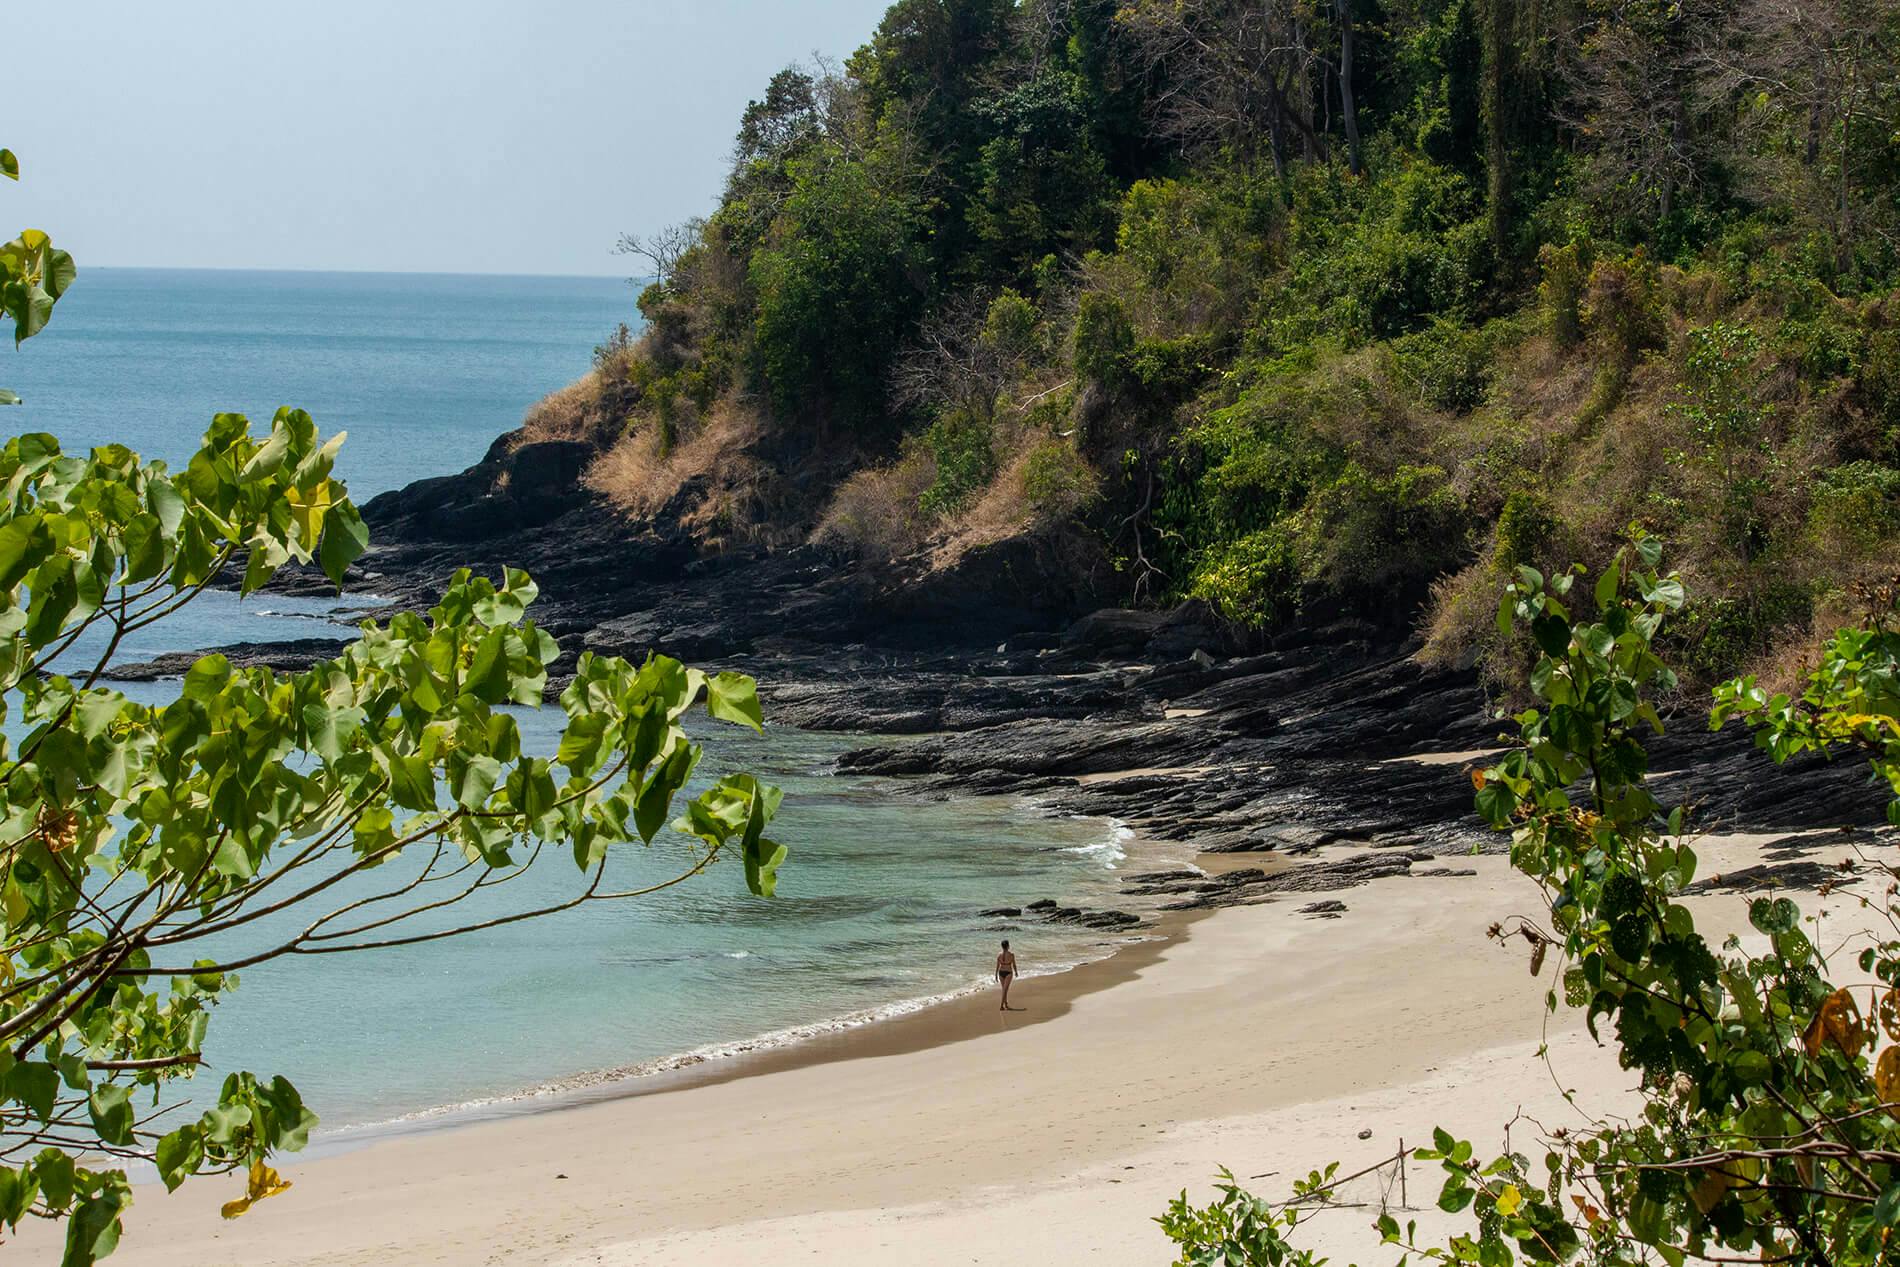 Una bellissima spiaggia di Koh Lanta, in Thailandia. Da dietro dei rami, si intravede il mare e la spiaggia, dietro la quale si innalza una roccia, popolata di verdi alberi.